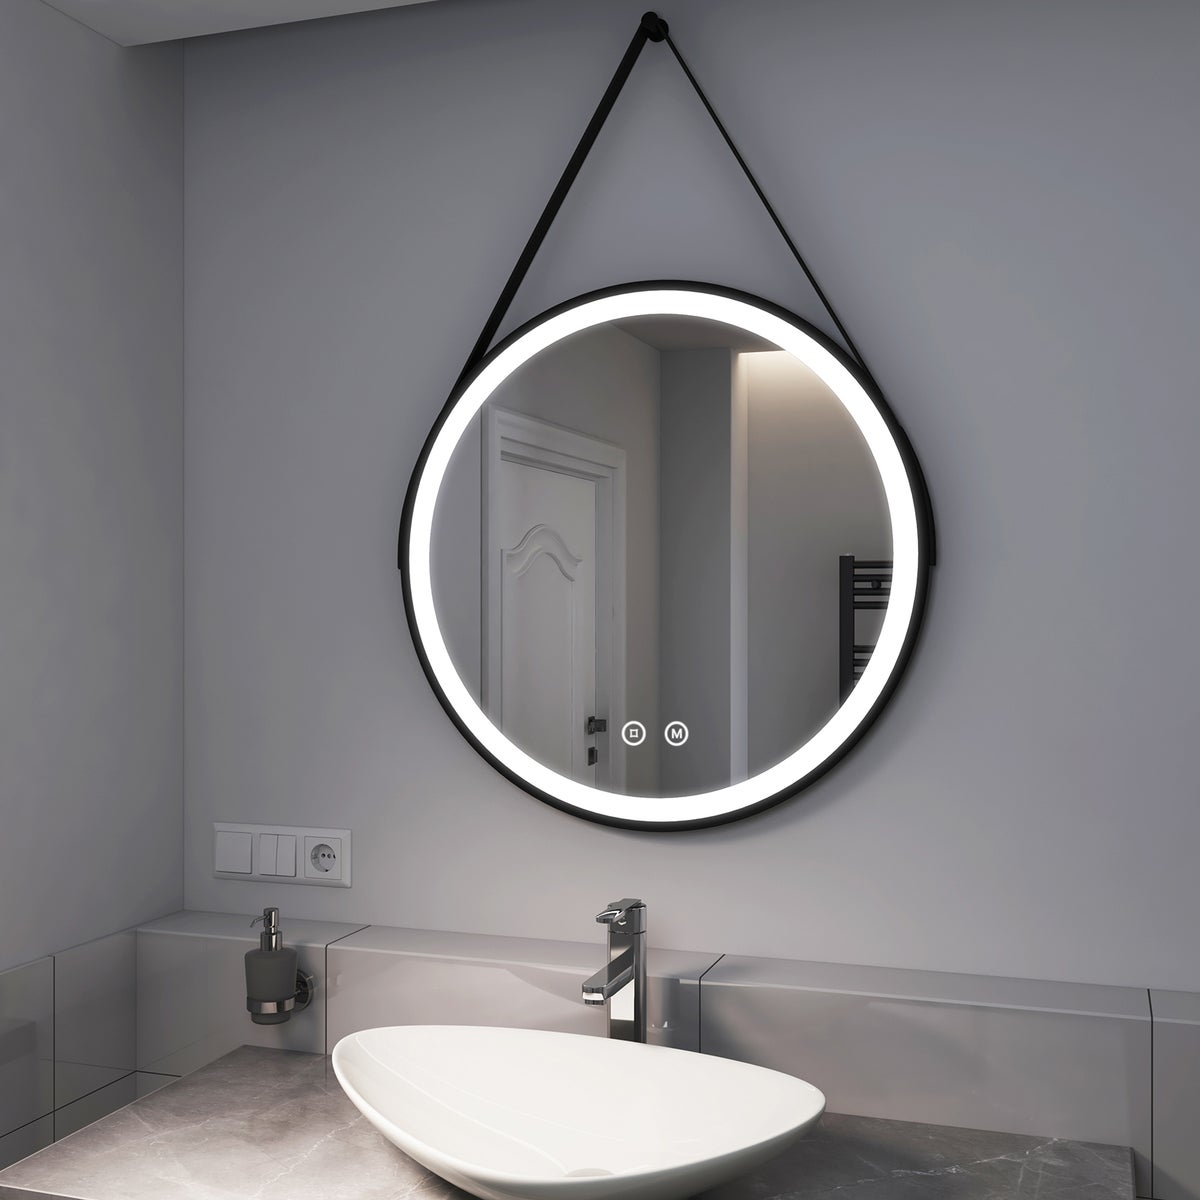 EMKE Badspiegel mit Beleuchtung Schwarz Rahmen und Riemen ф70cm, 3 Lichtfarben,Dimmbar